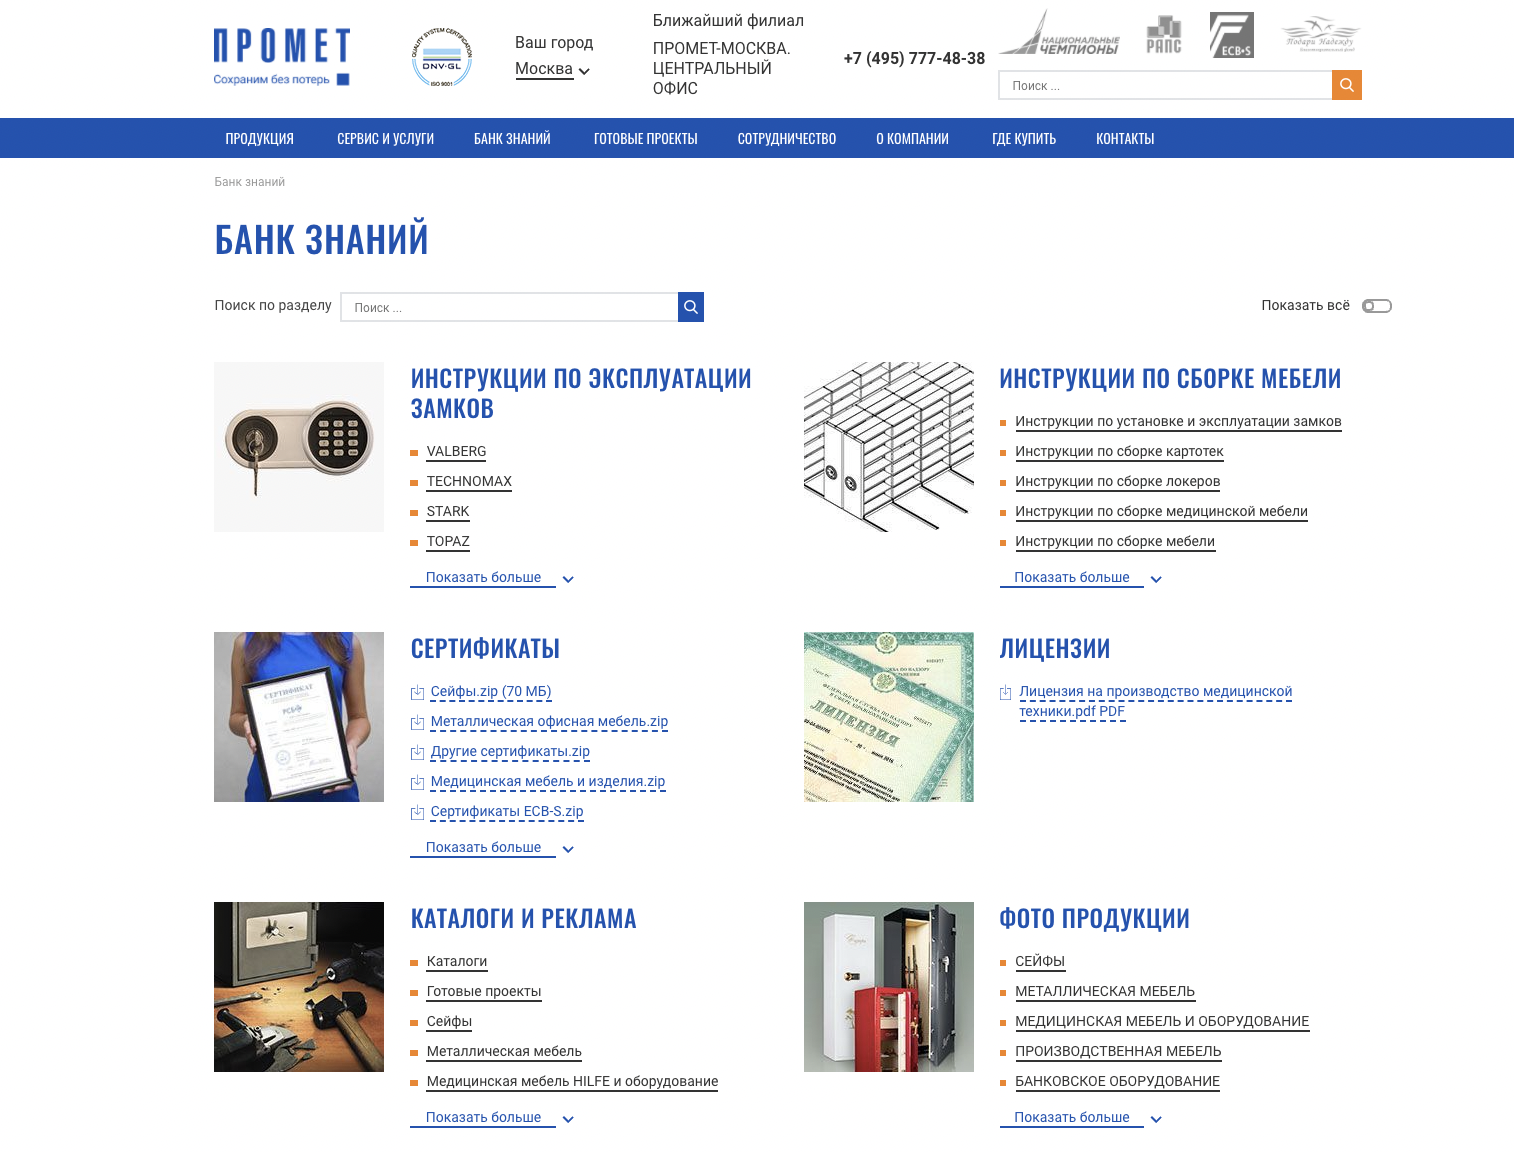 Скриншот дизайна страницы сайта “Банк знаний”